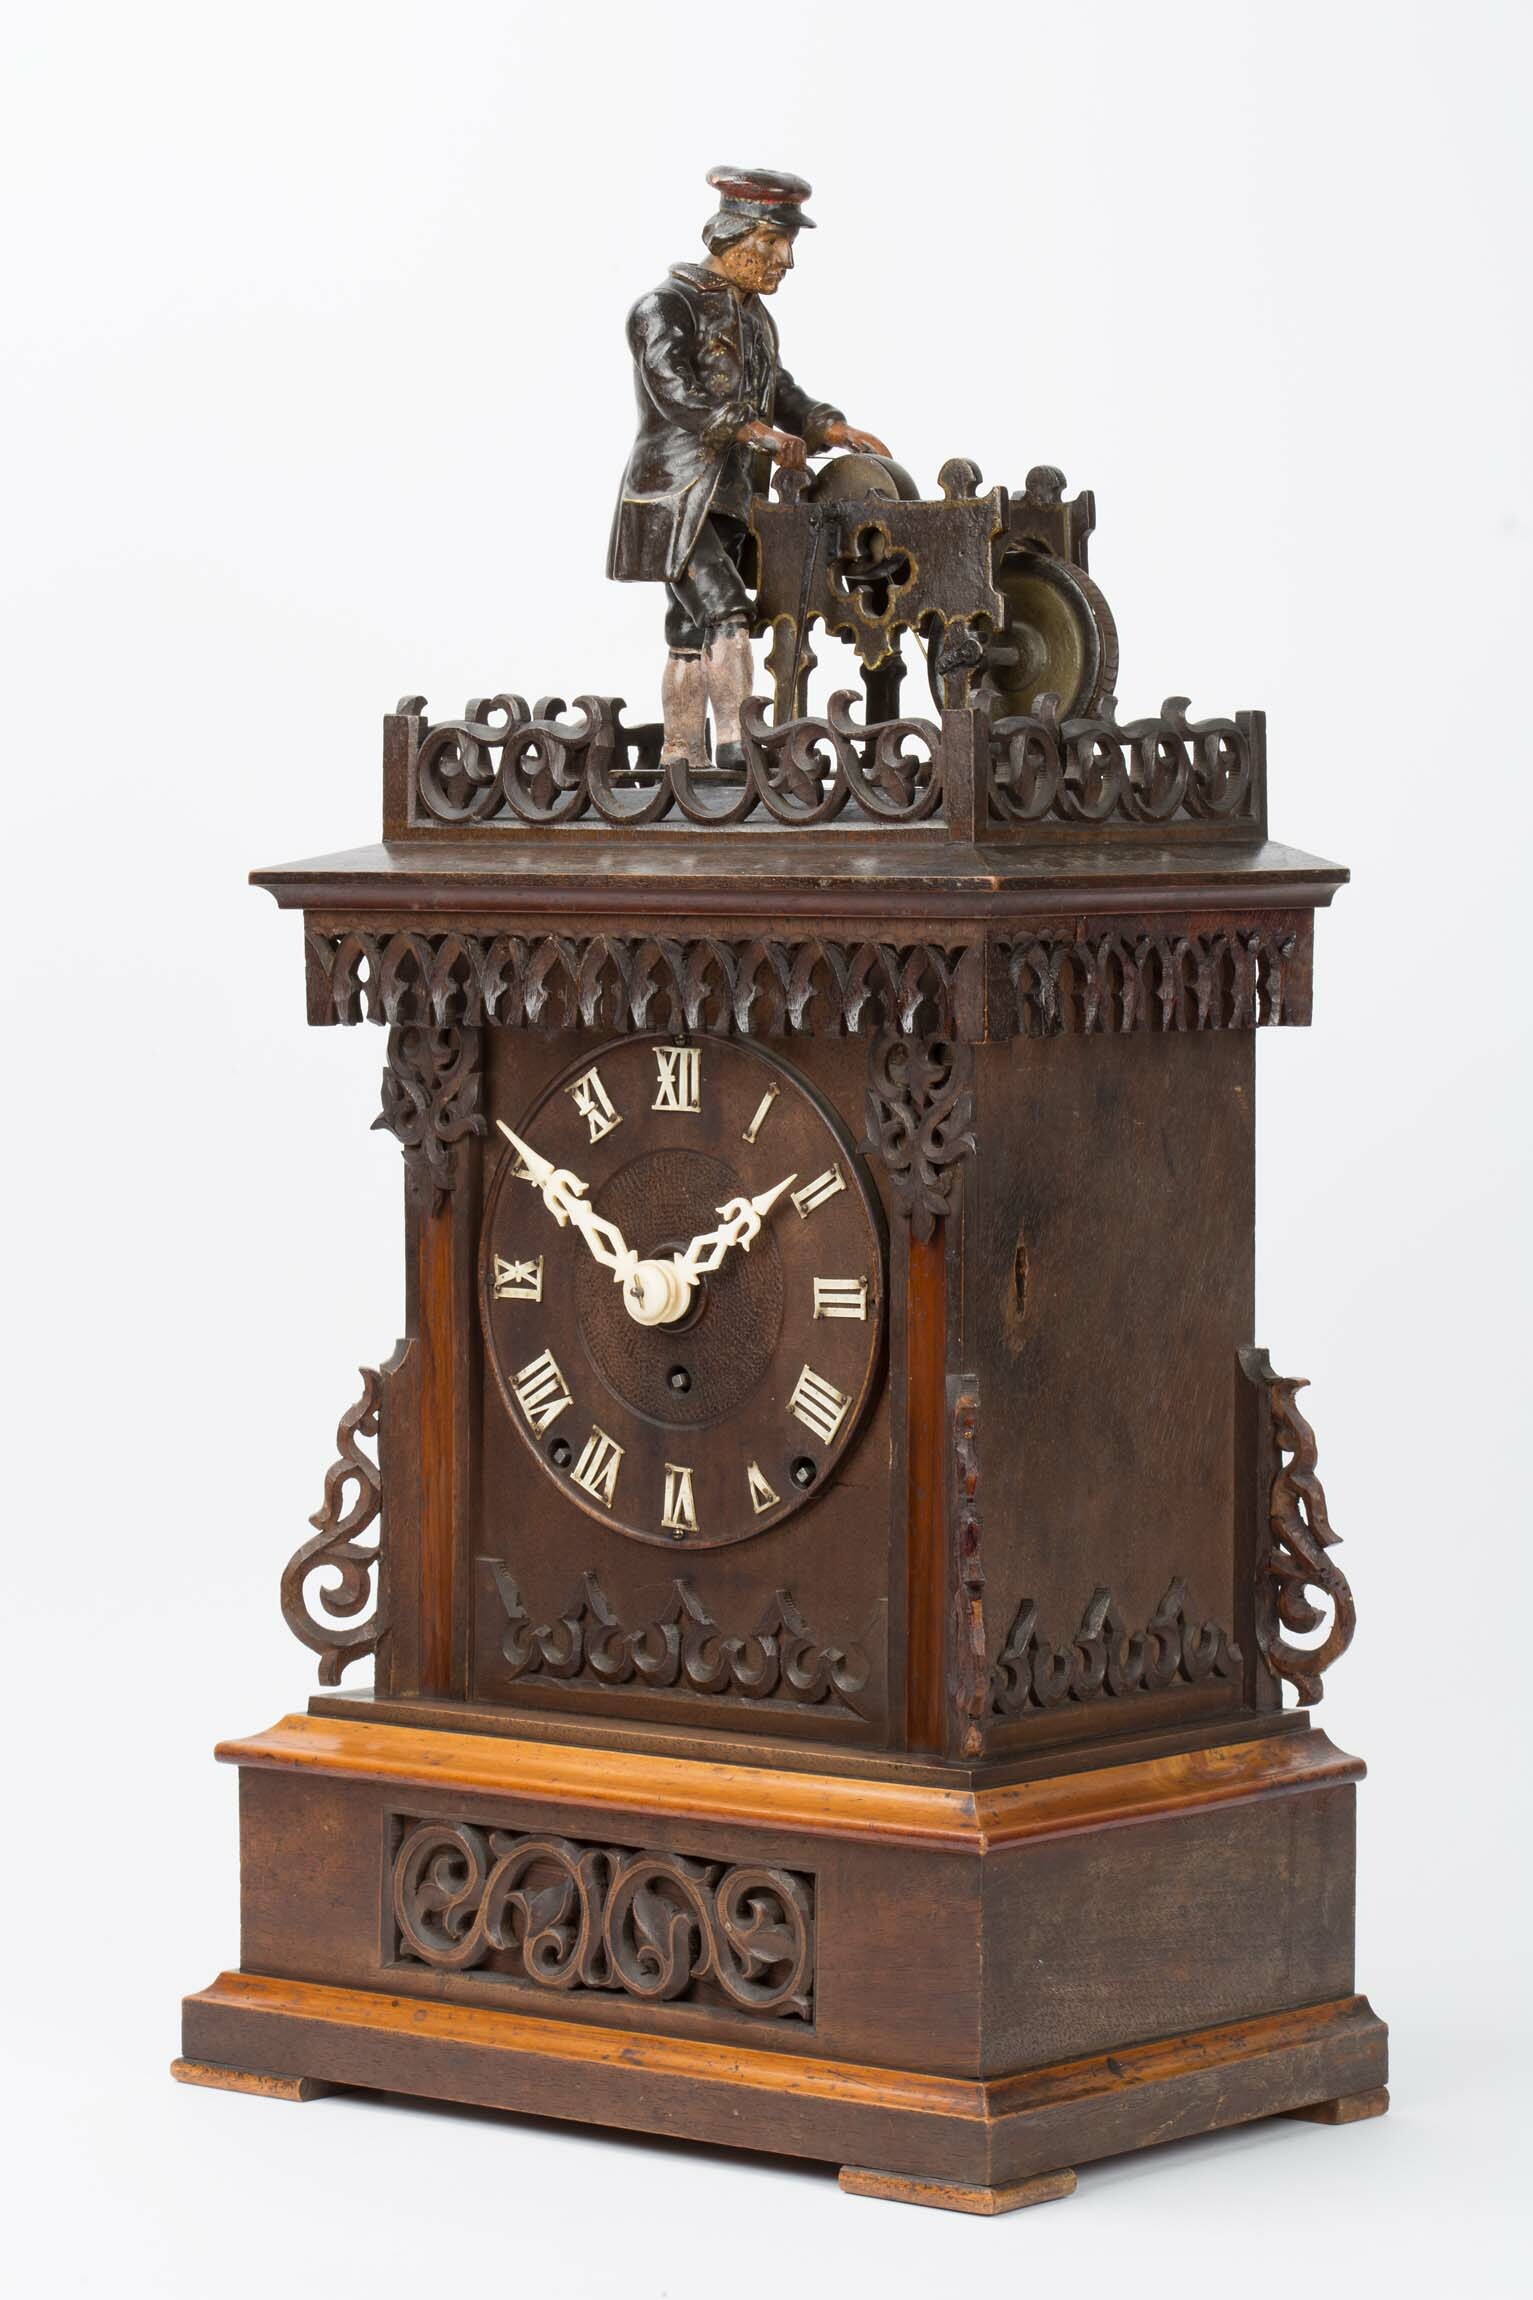 Tischuhr mit Scherenschleifer, wohl Gordian Hettich Sohn, Furtwangen, um 1890 (Deutsches Uhrenmuseum CC BY-SA)